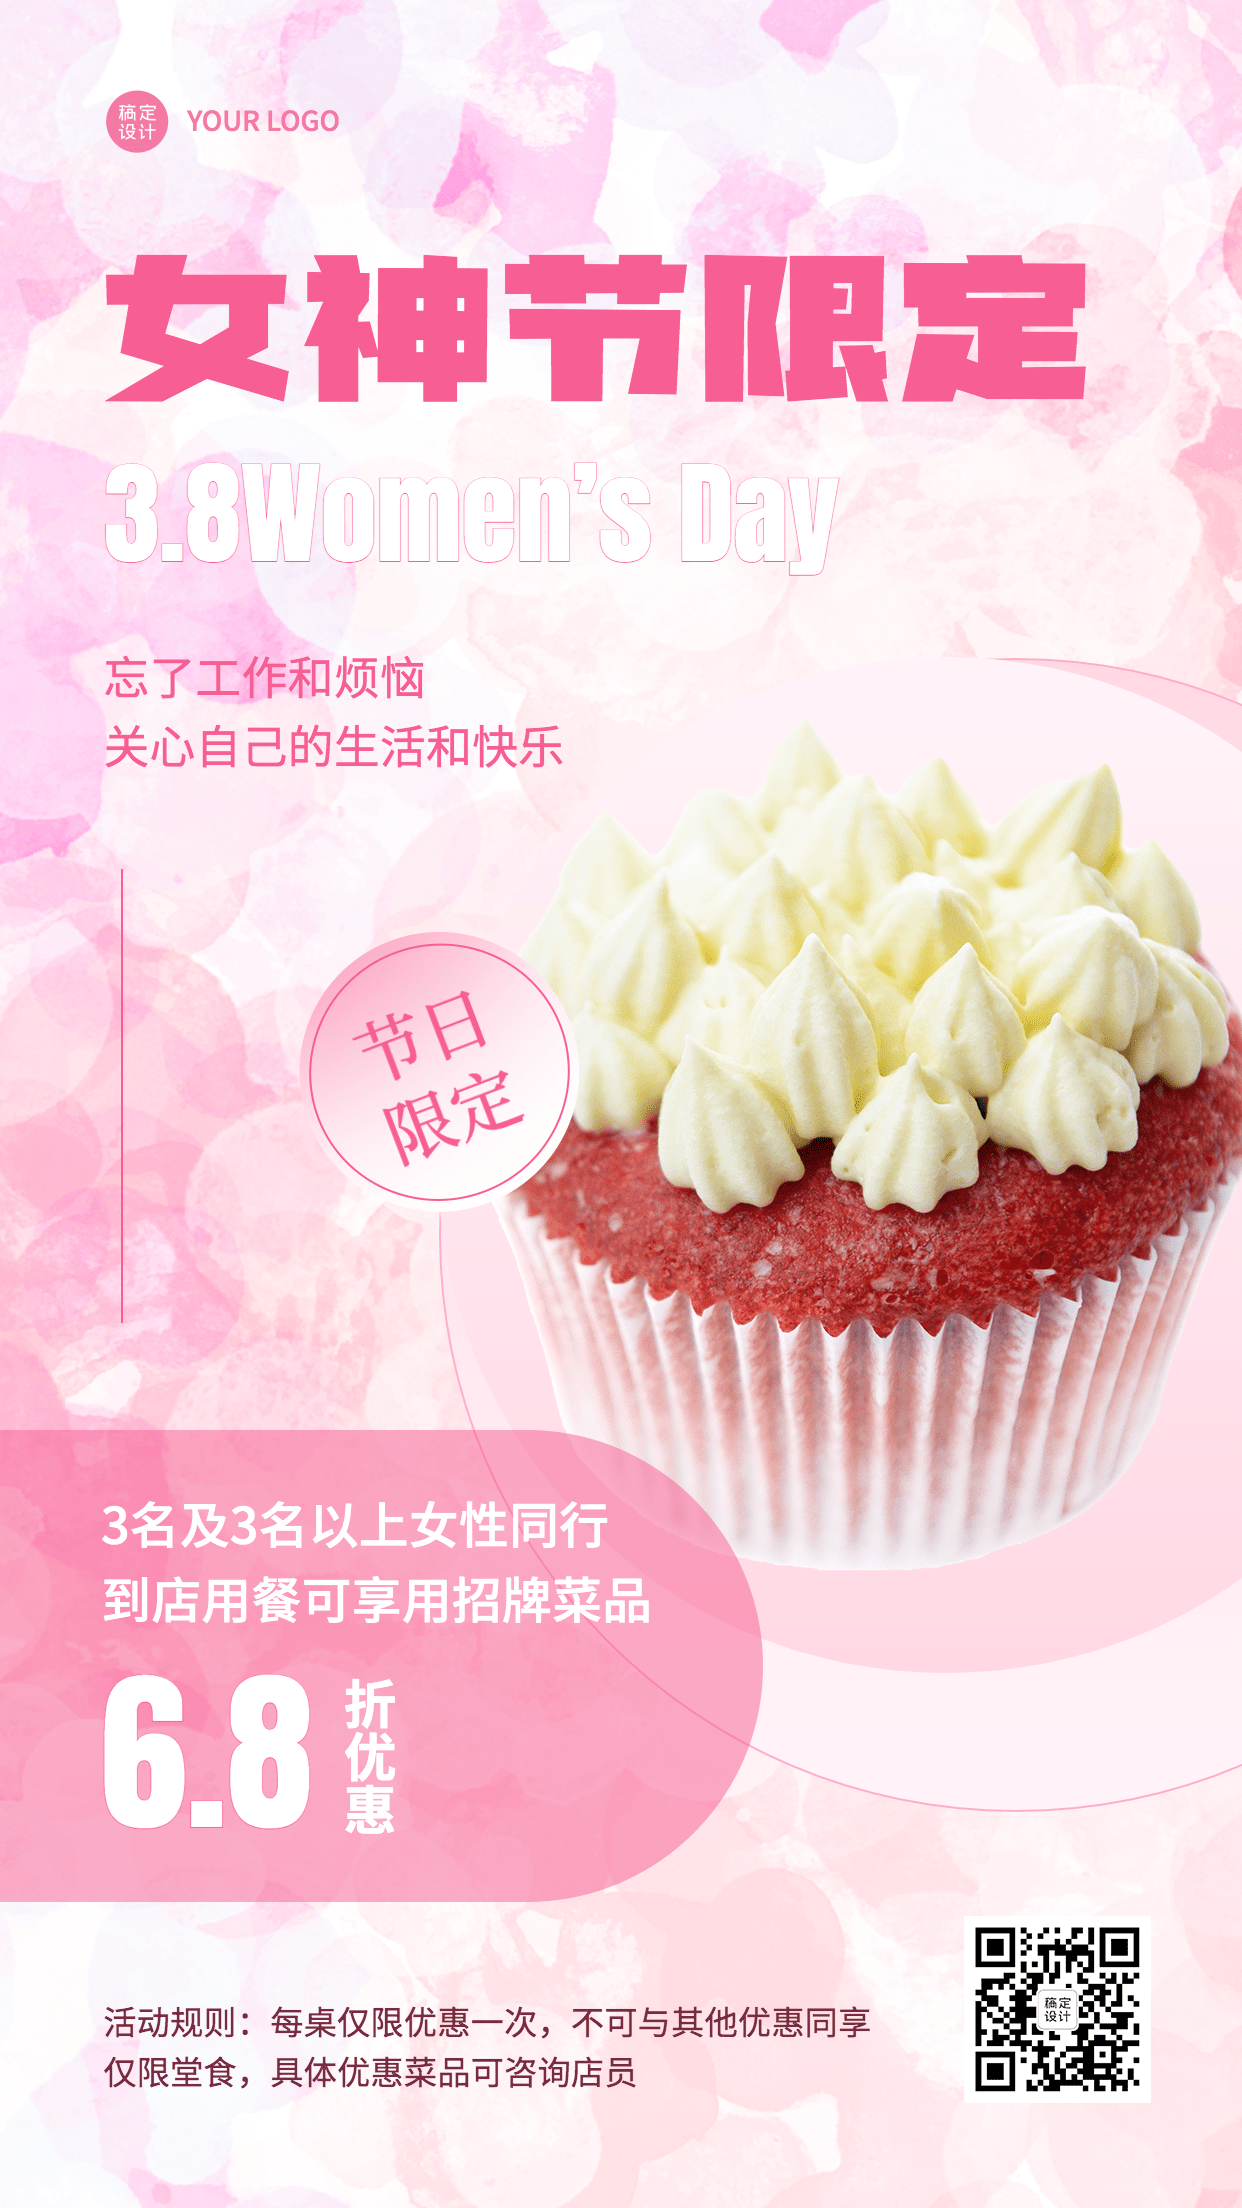 妇女节蛋糕烘焙甜品产品营销促销餐饮手机海报